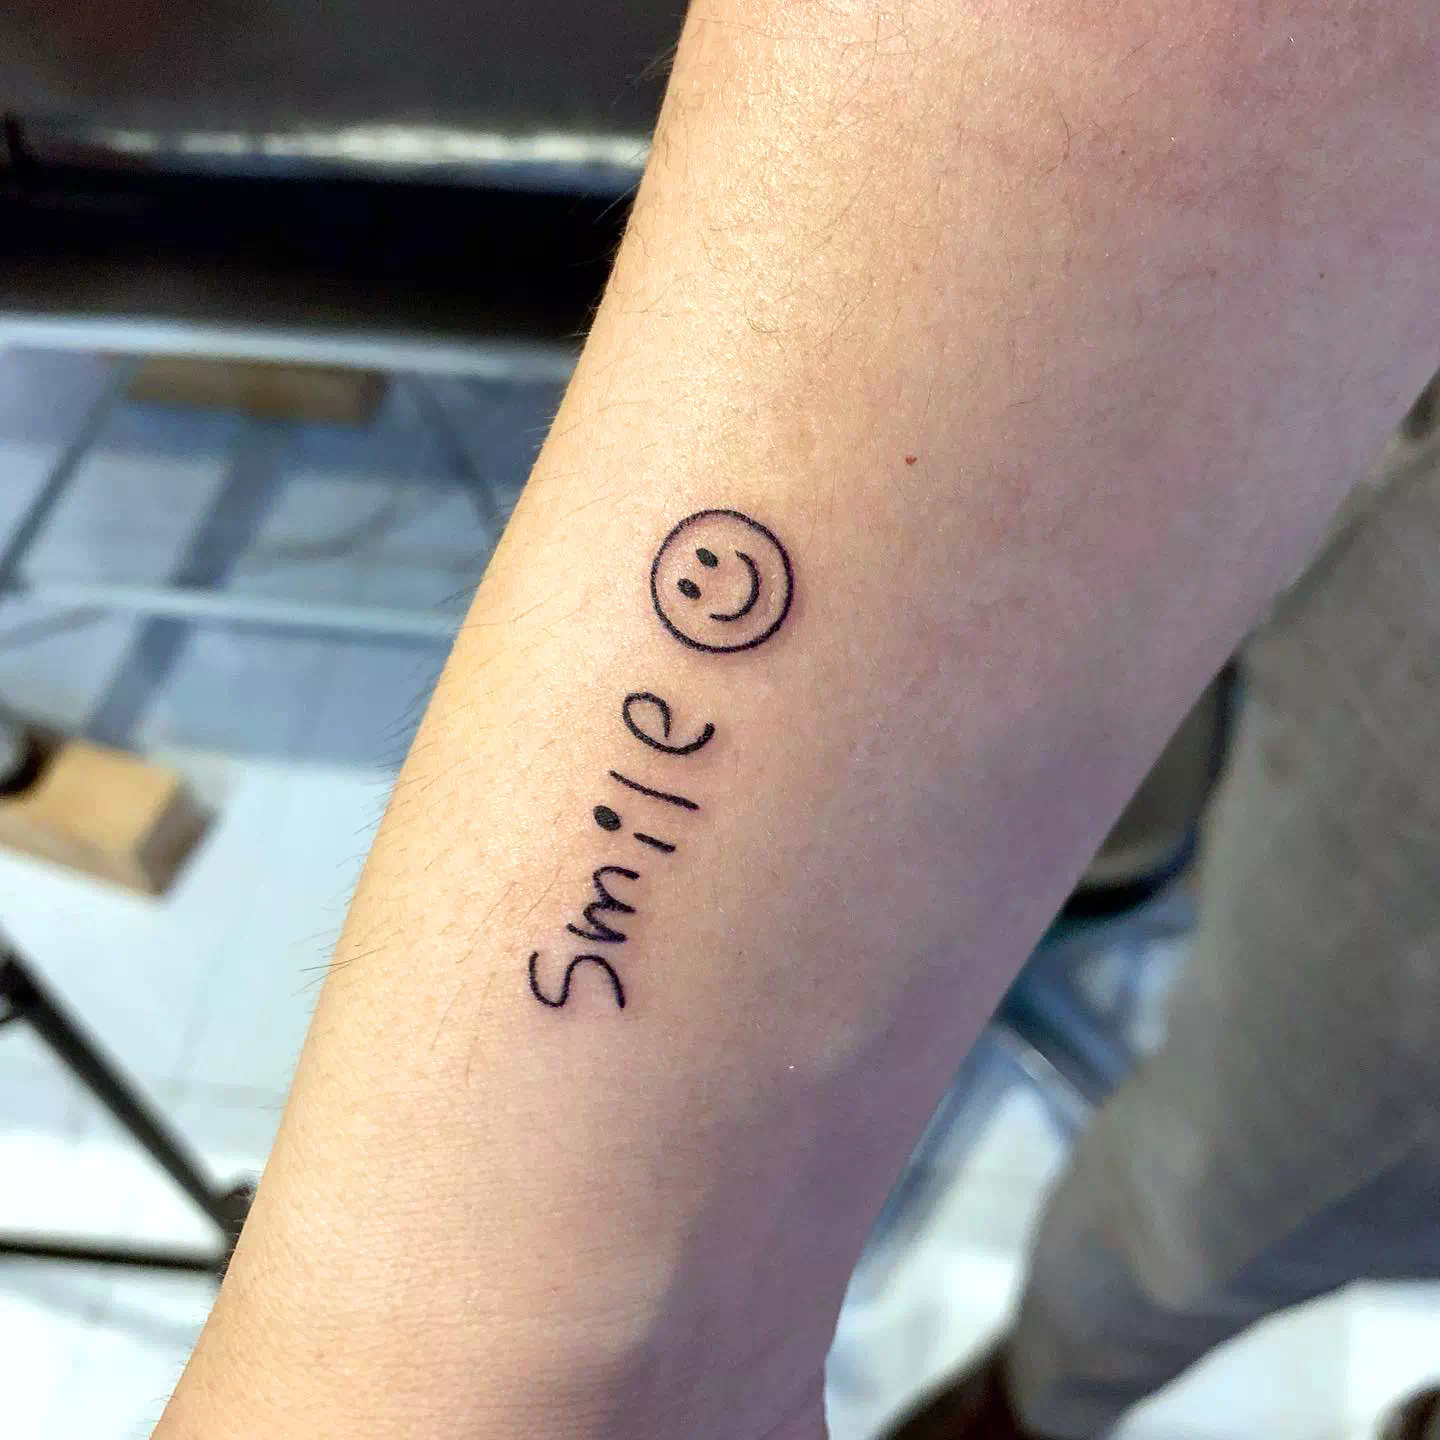 Tatuaje de una sonrisa optimista en el brazo